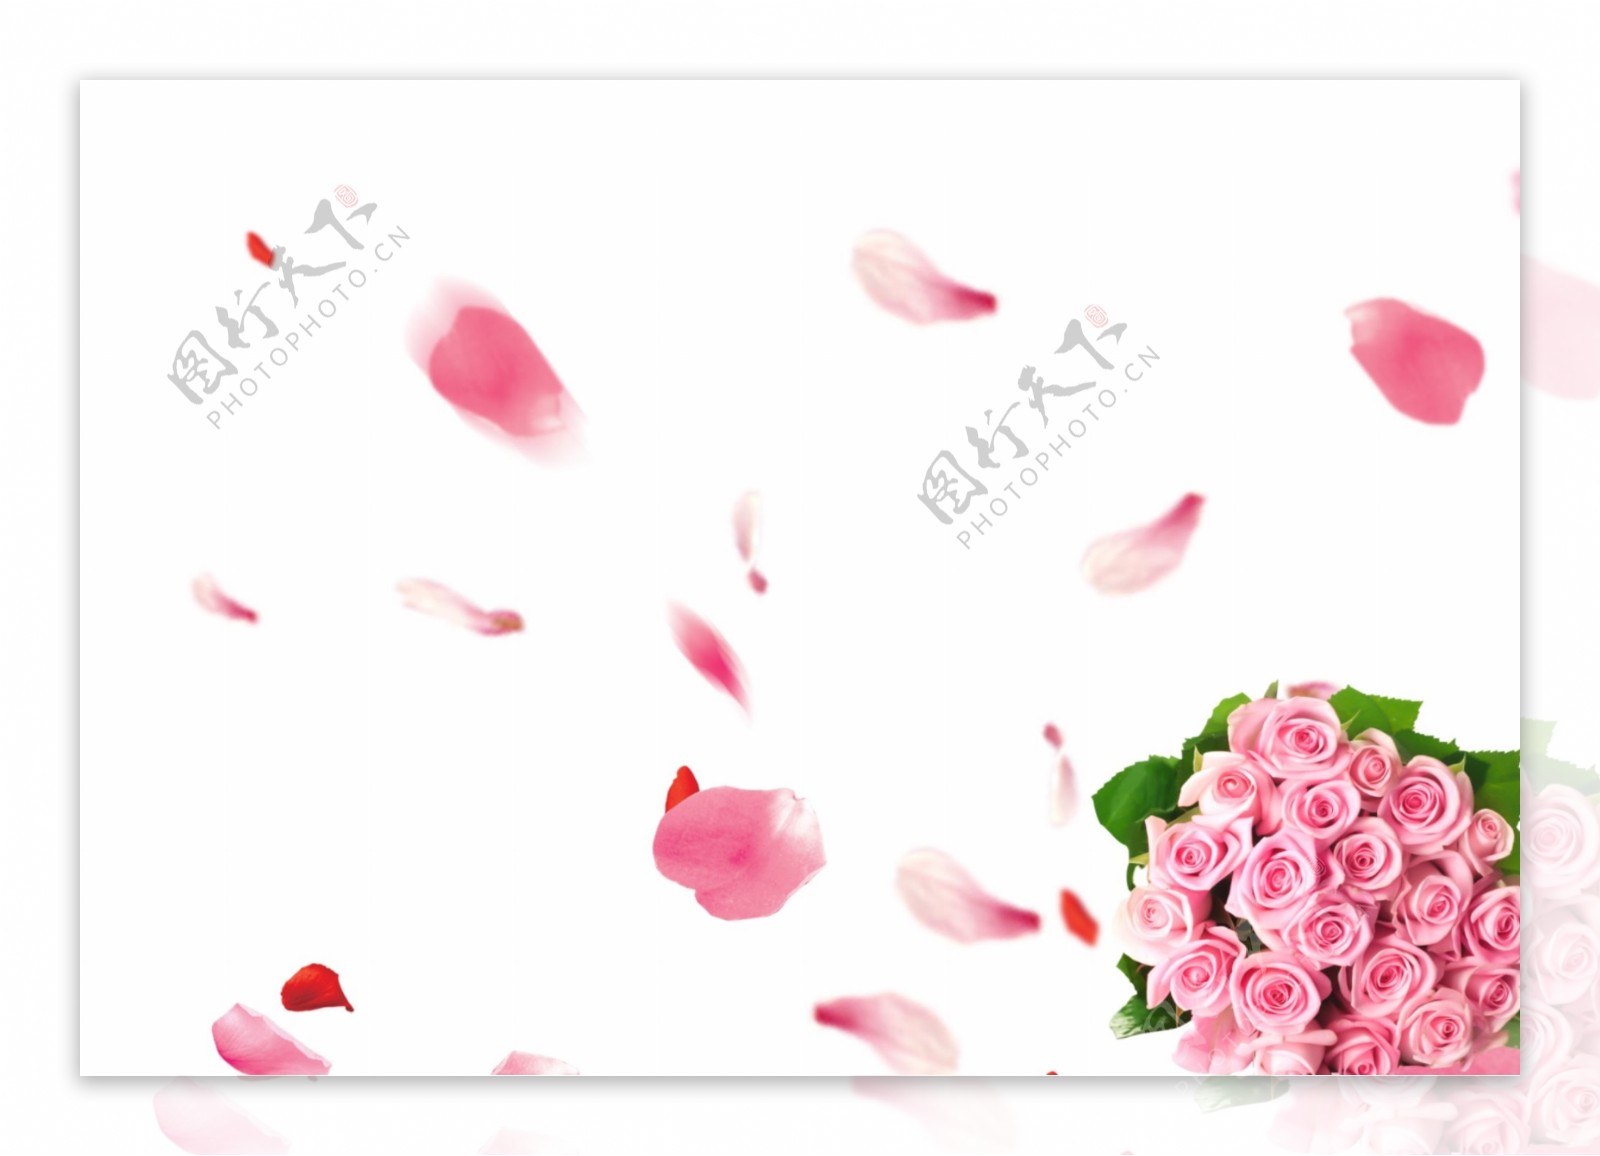 粉色玫瑰花瓣花束